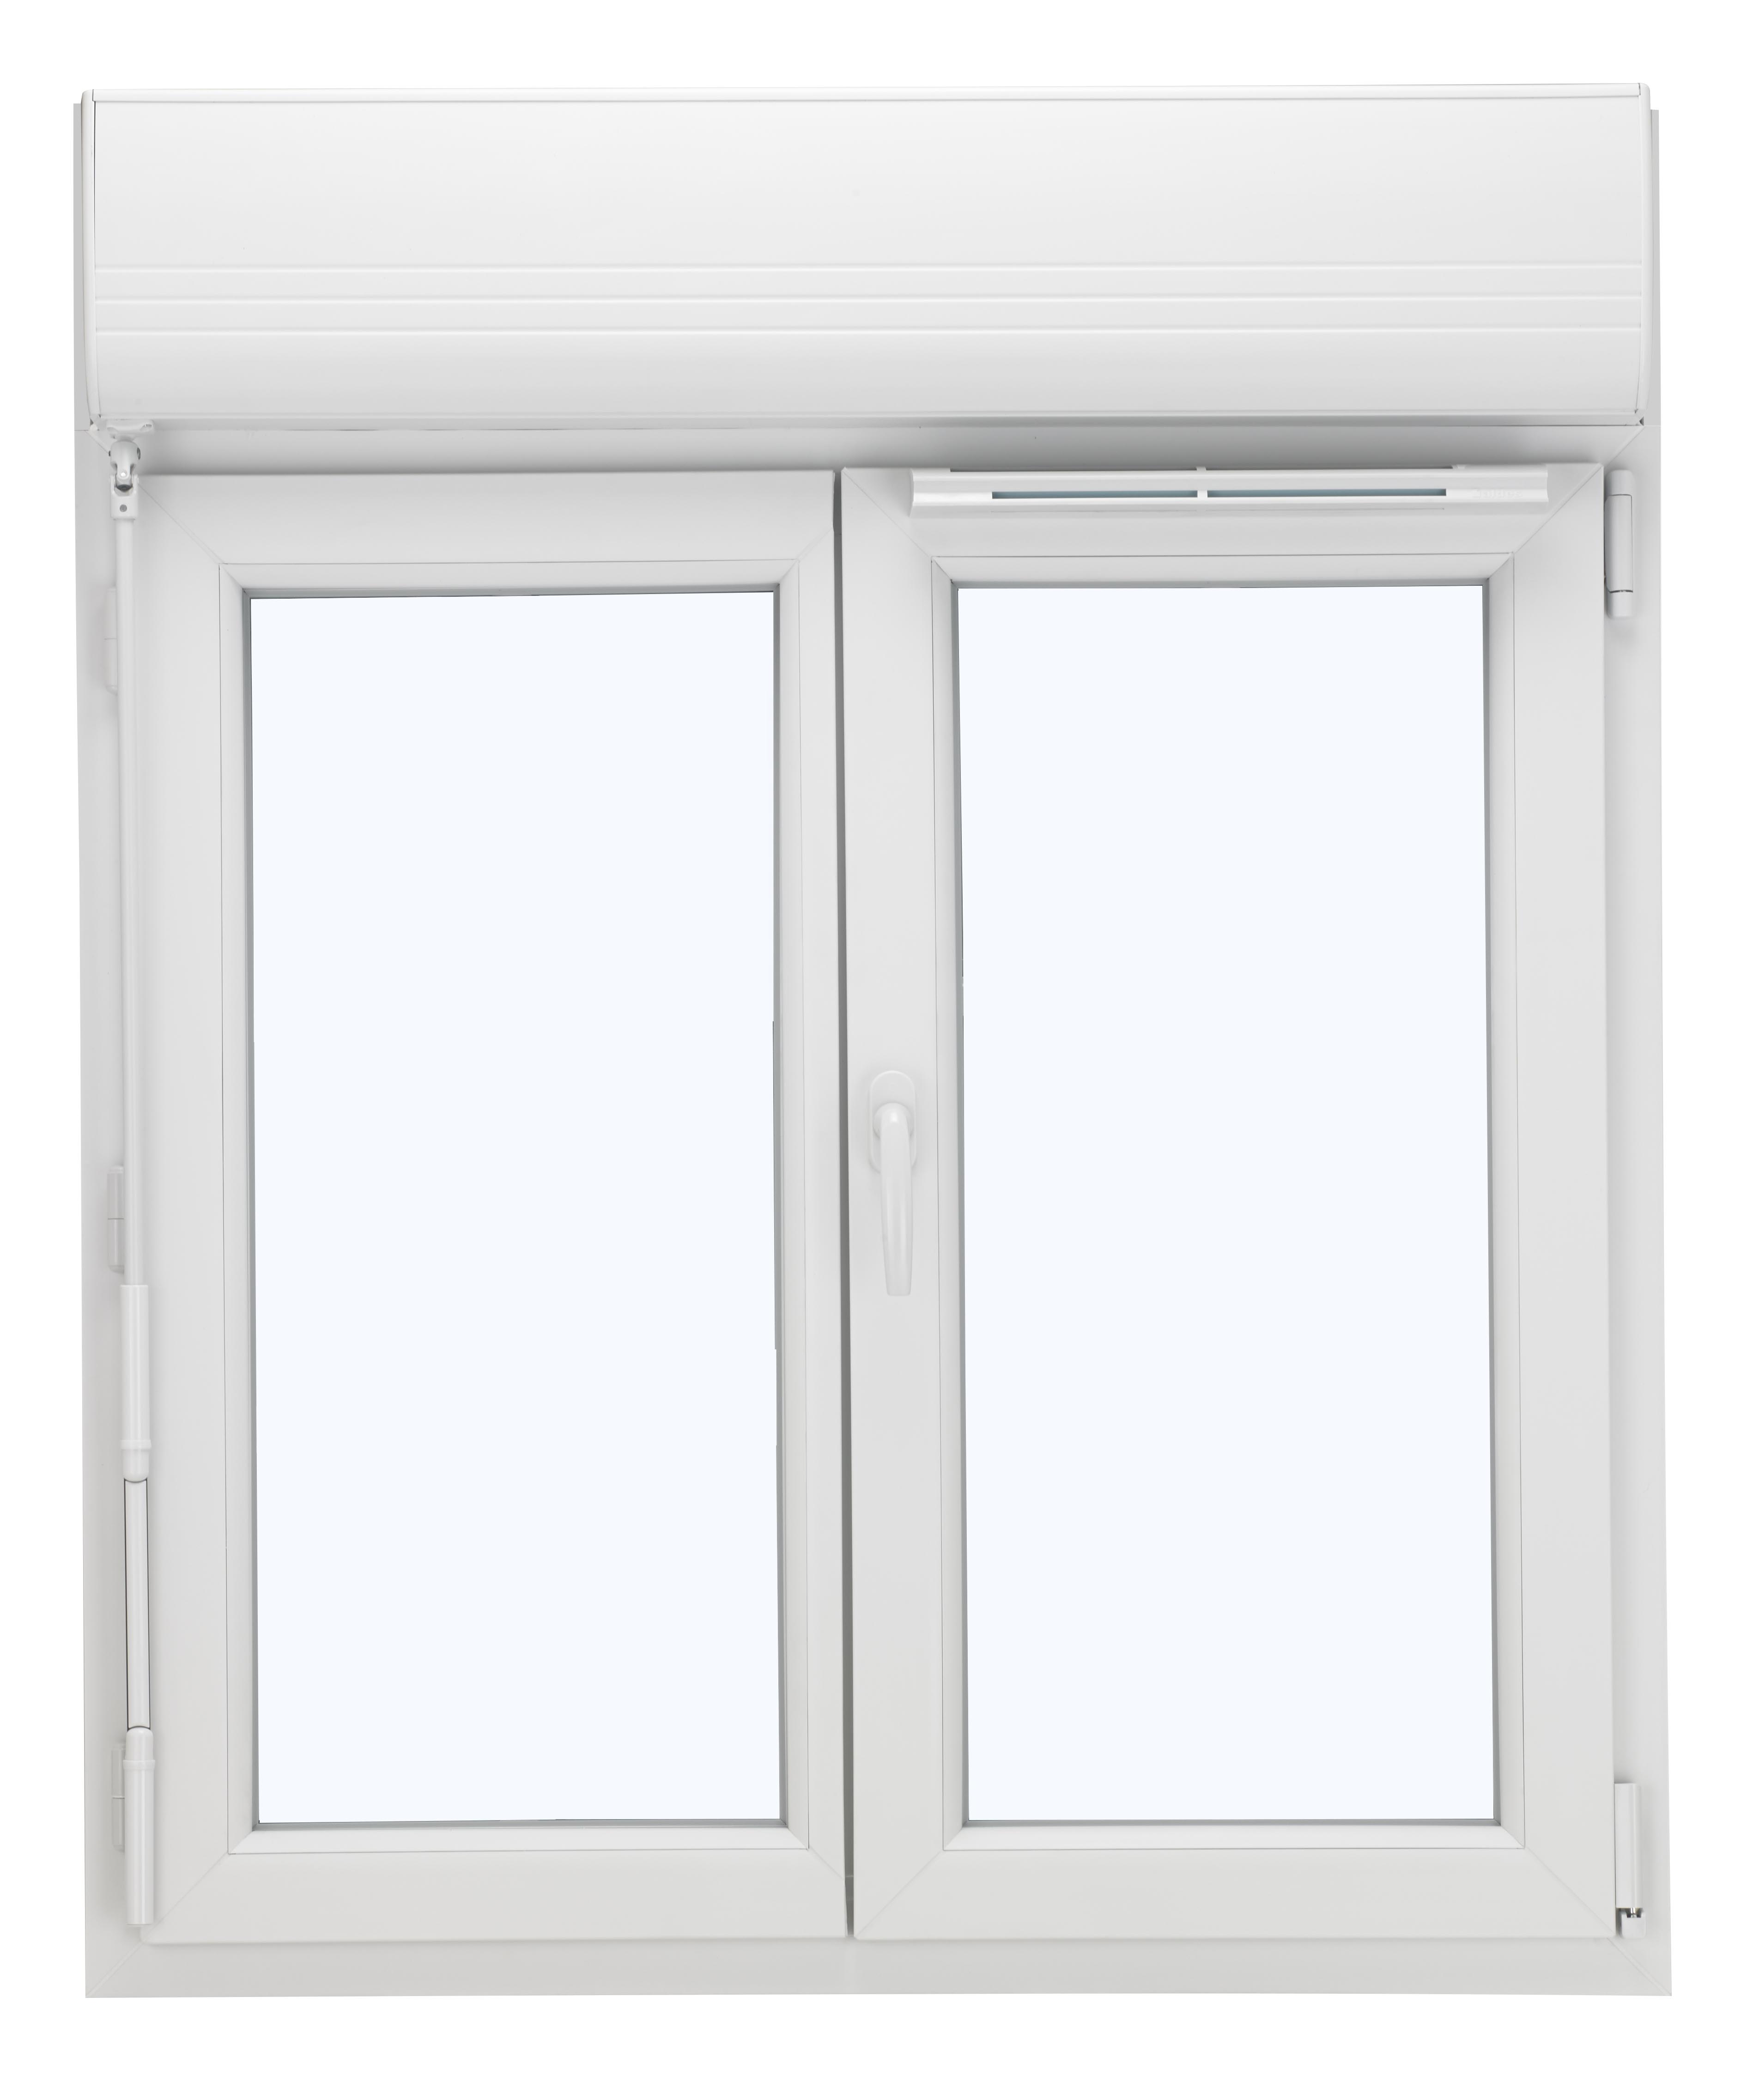 Fenêtre PVC, bois et alu : Rénovation avec volet roulant intégré - LMF